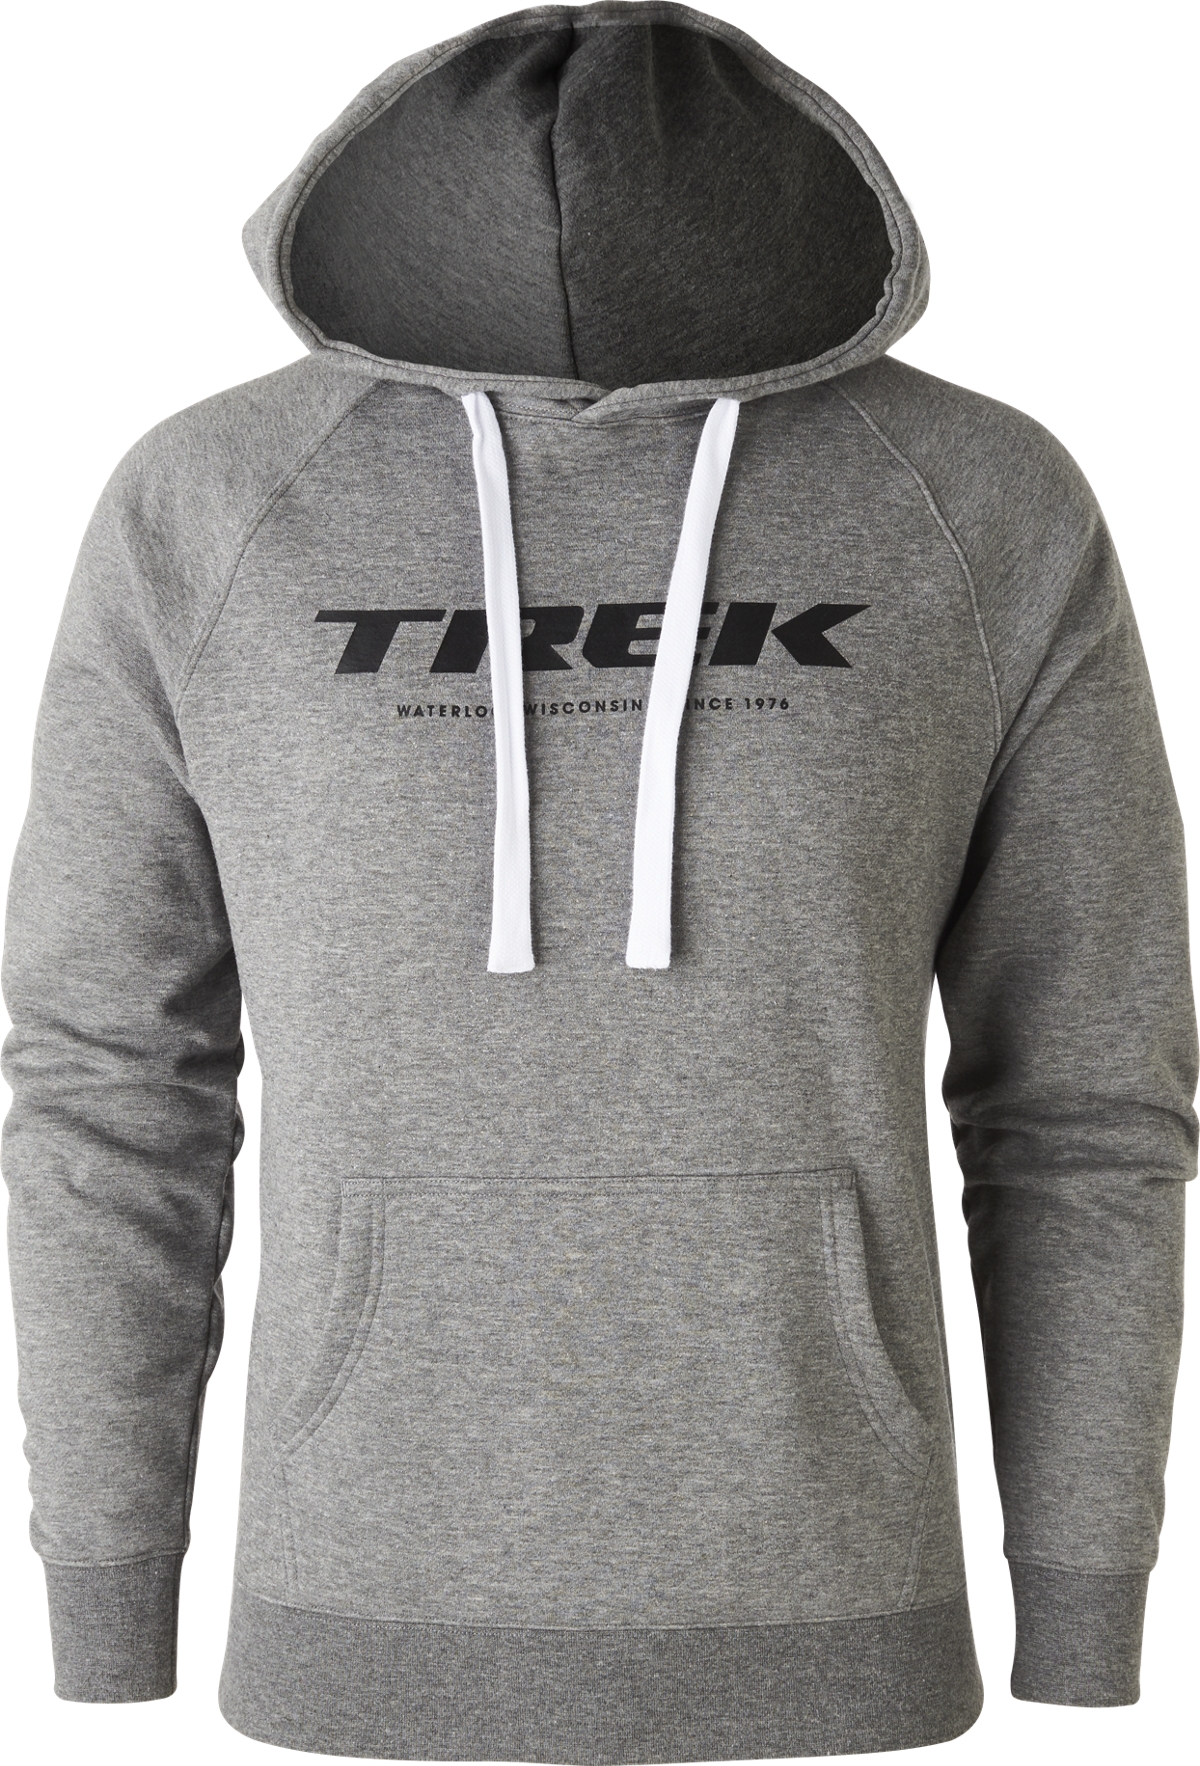 trek factory racing hoodie